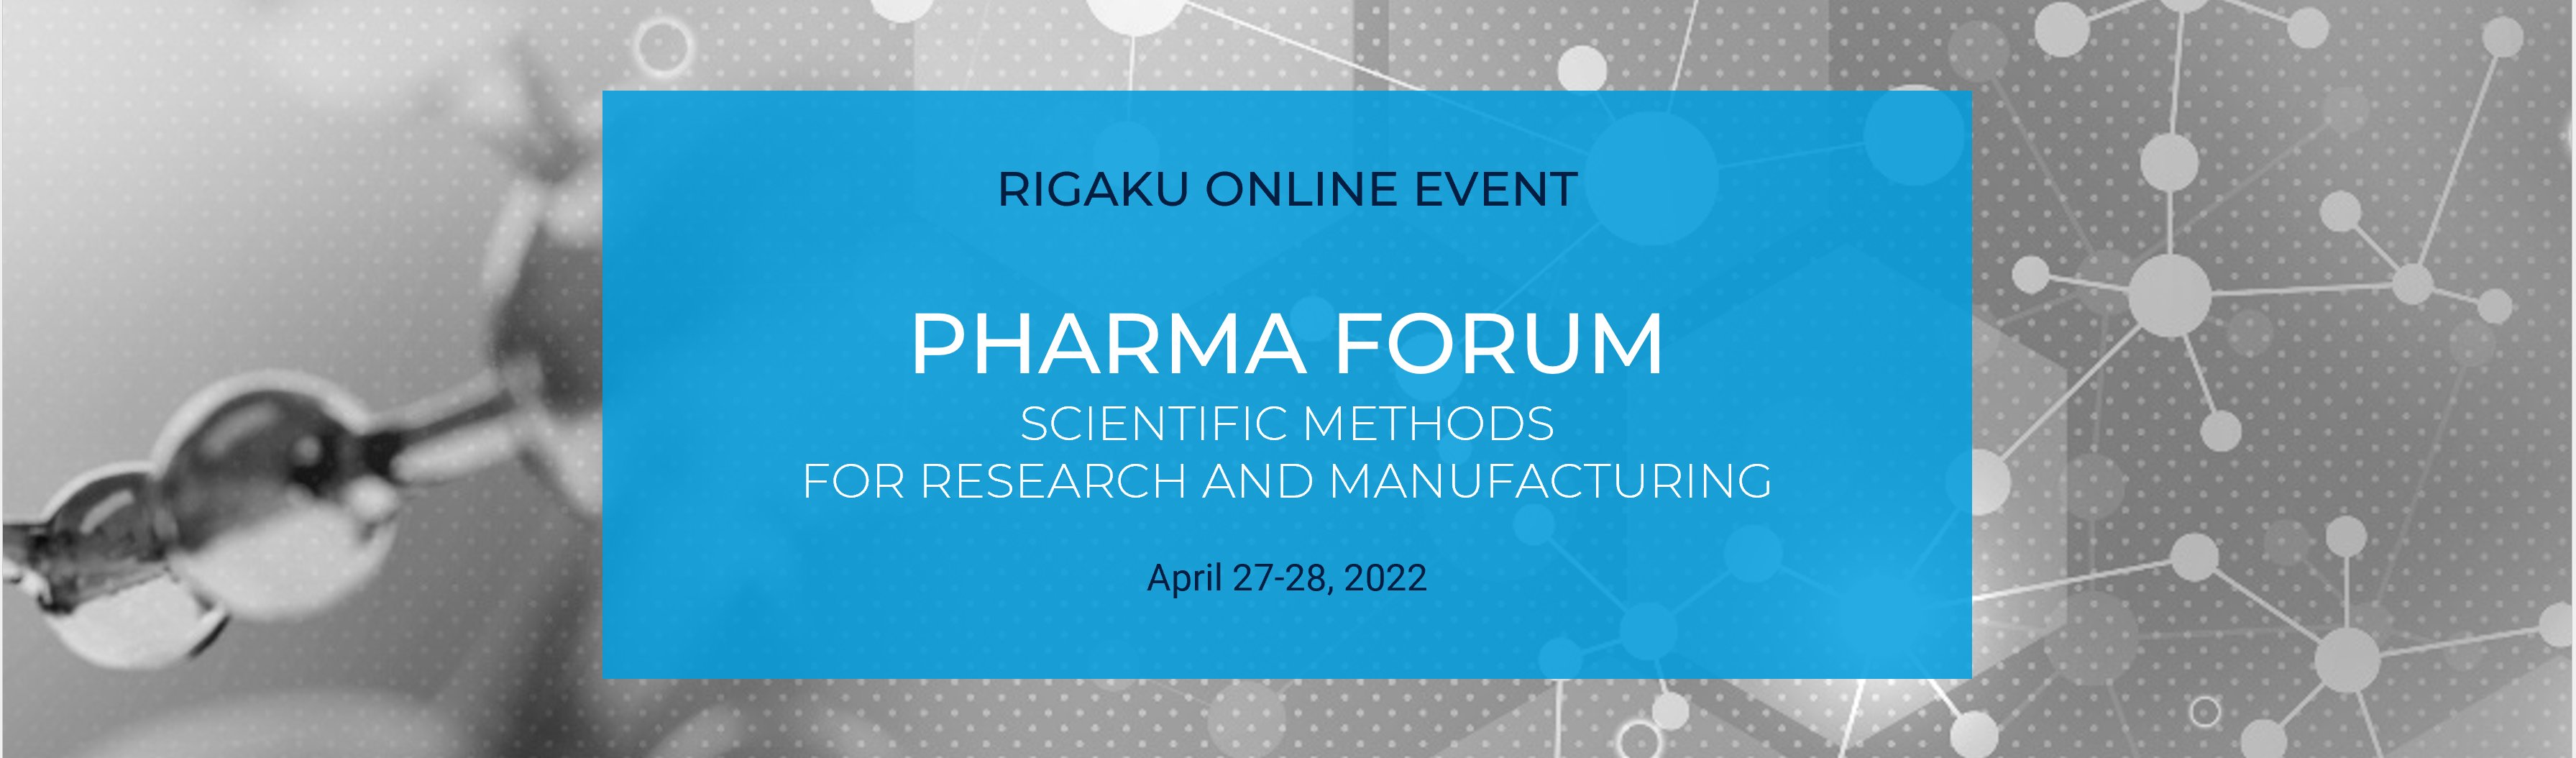 Pharma Forum 2022-banner